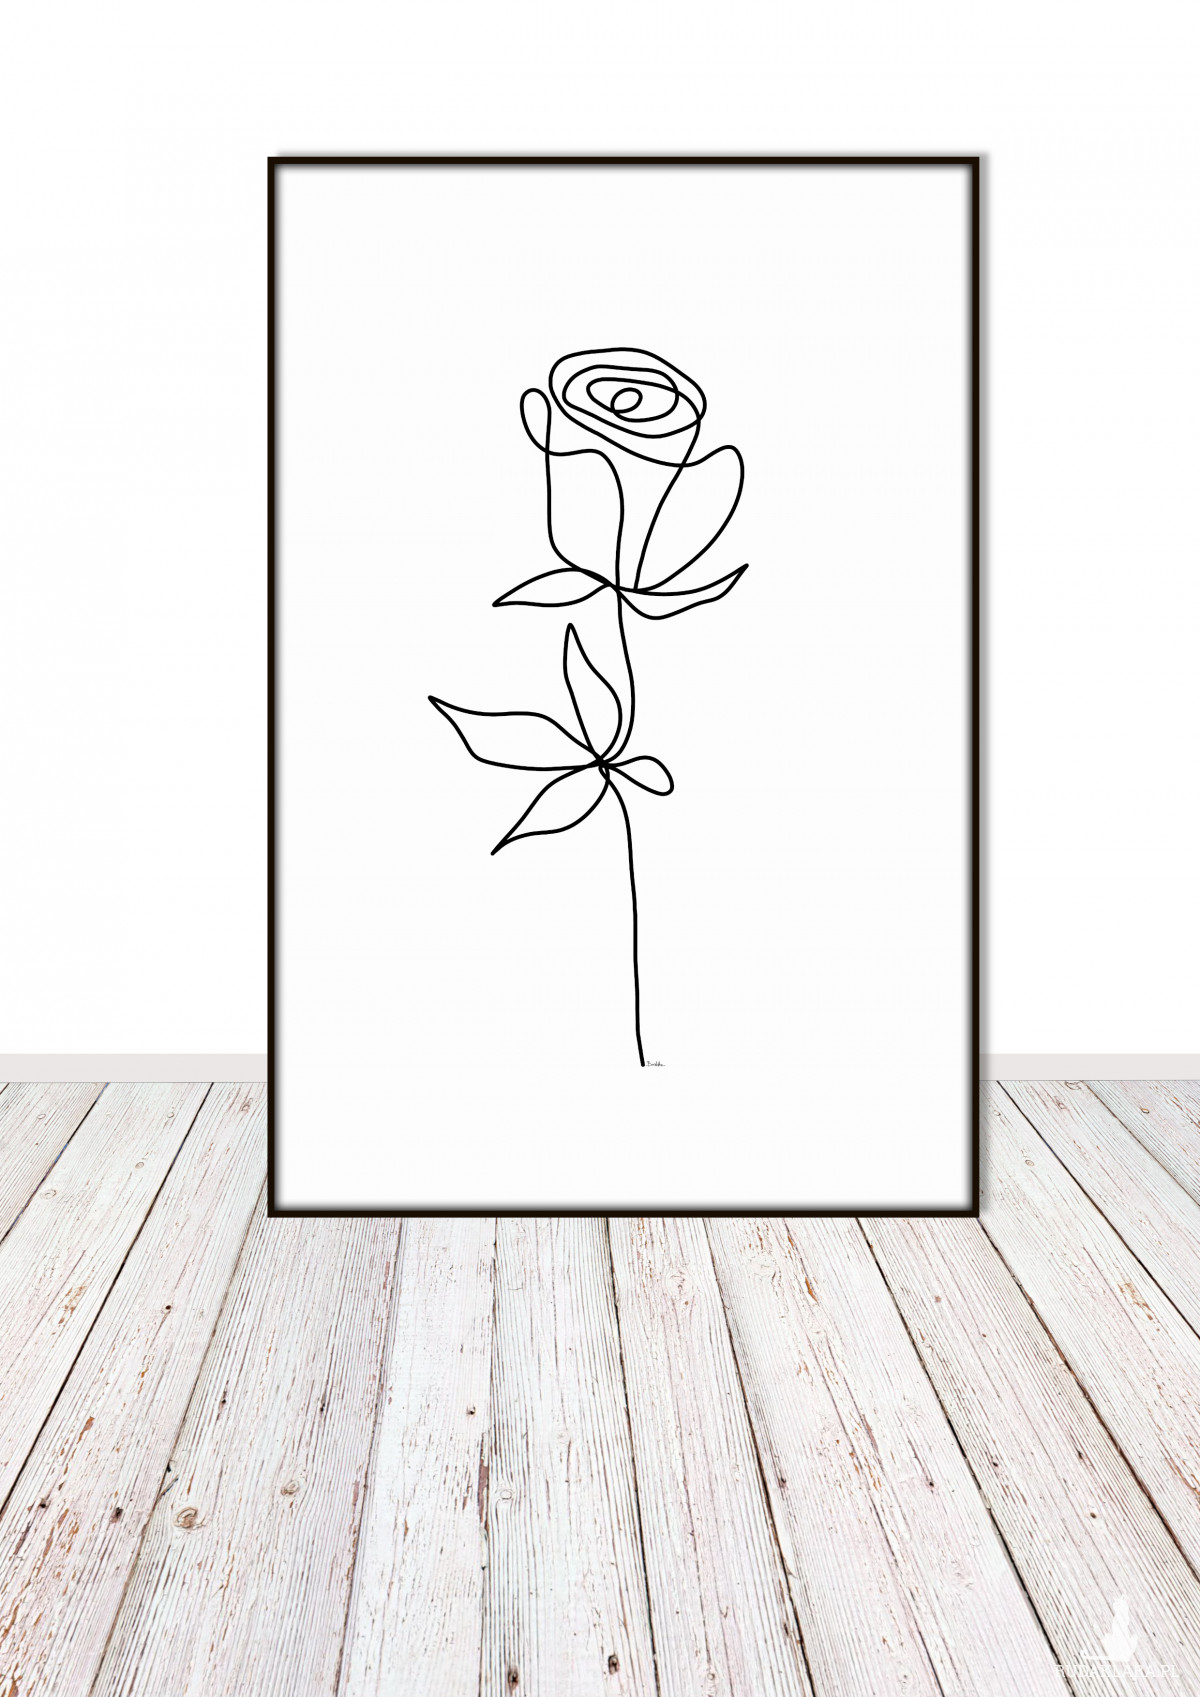 Róża, minimalistyczna grafika autorska, plik cyfrowy do pobrania, wydrukuj jak chcesz